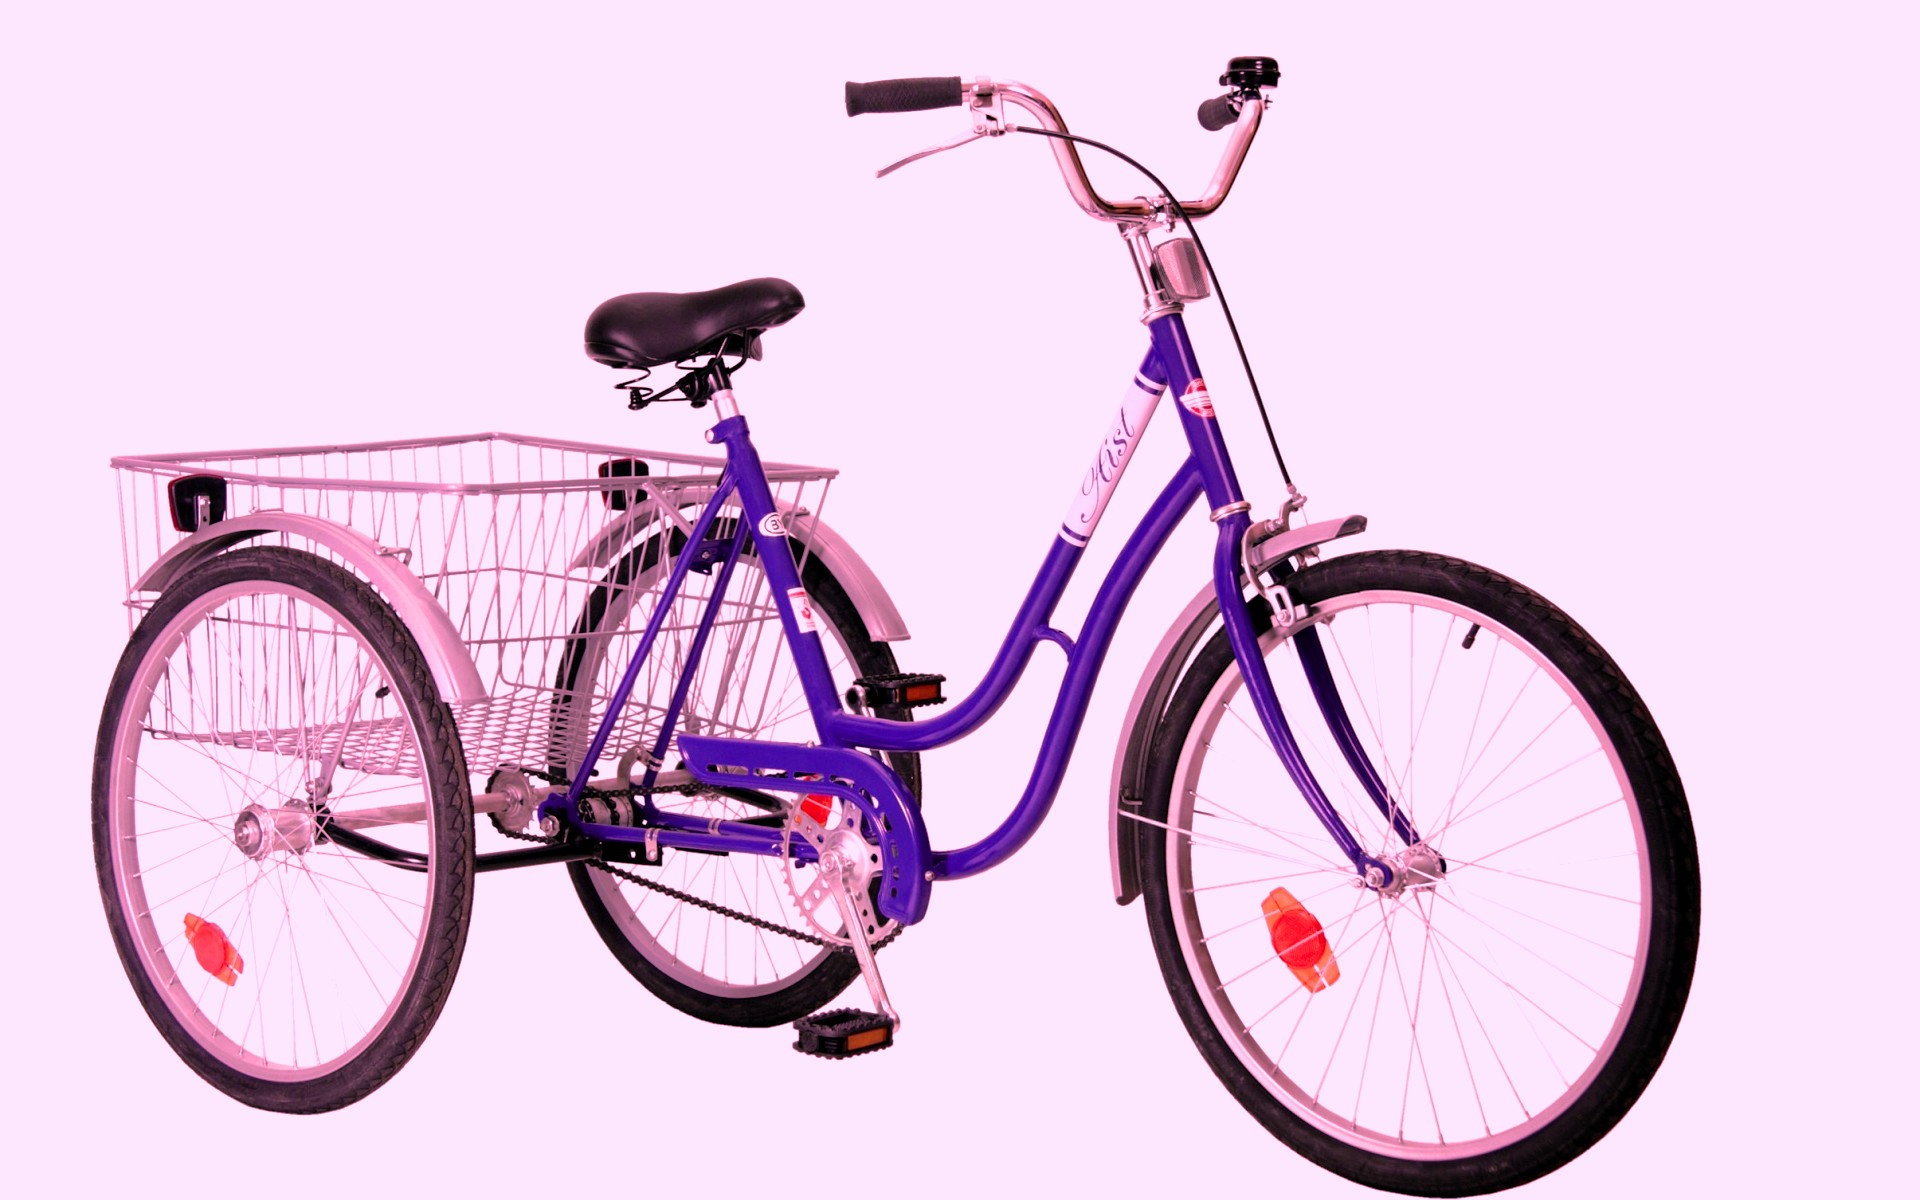 Авито купить велосипед взрослый в москве. Велосипед Аист трехколесный взрослый. Трёхколёсный велосипед Aist Cargo 1.1. Велосипед Аист трехколесный для взрослых грузовой. Велосипед deumeko трехколесный.